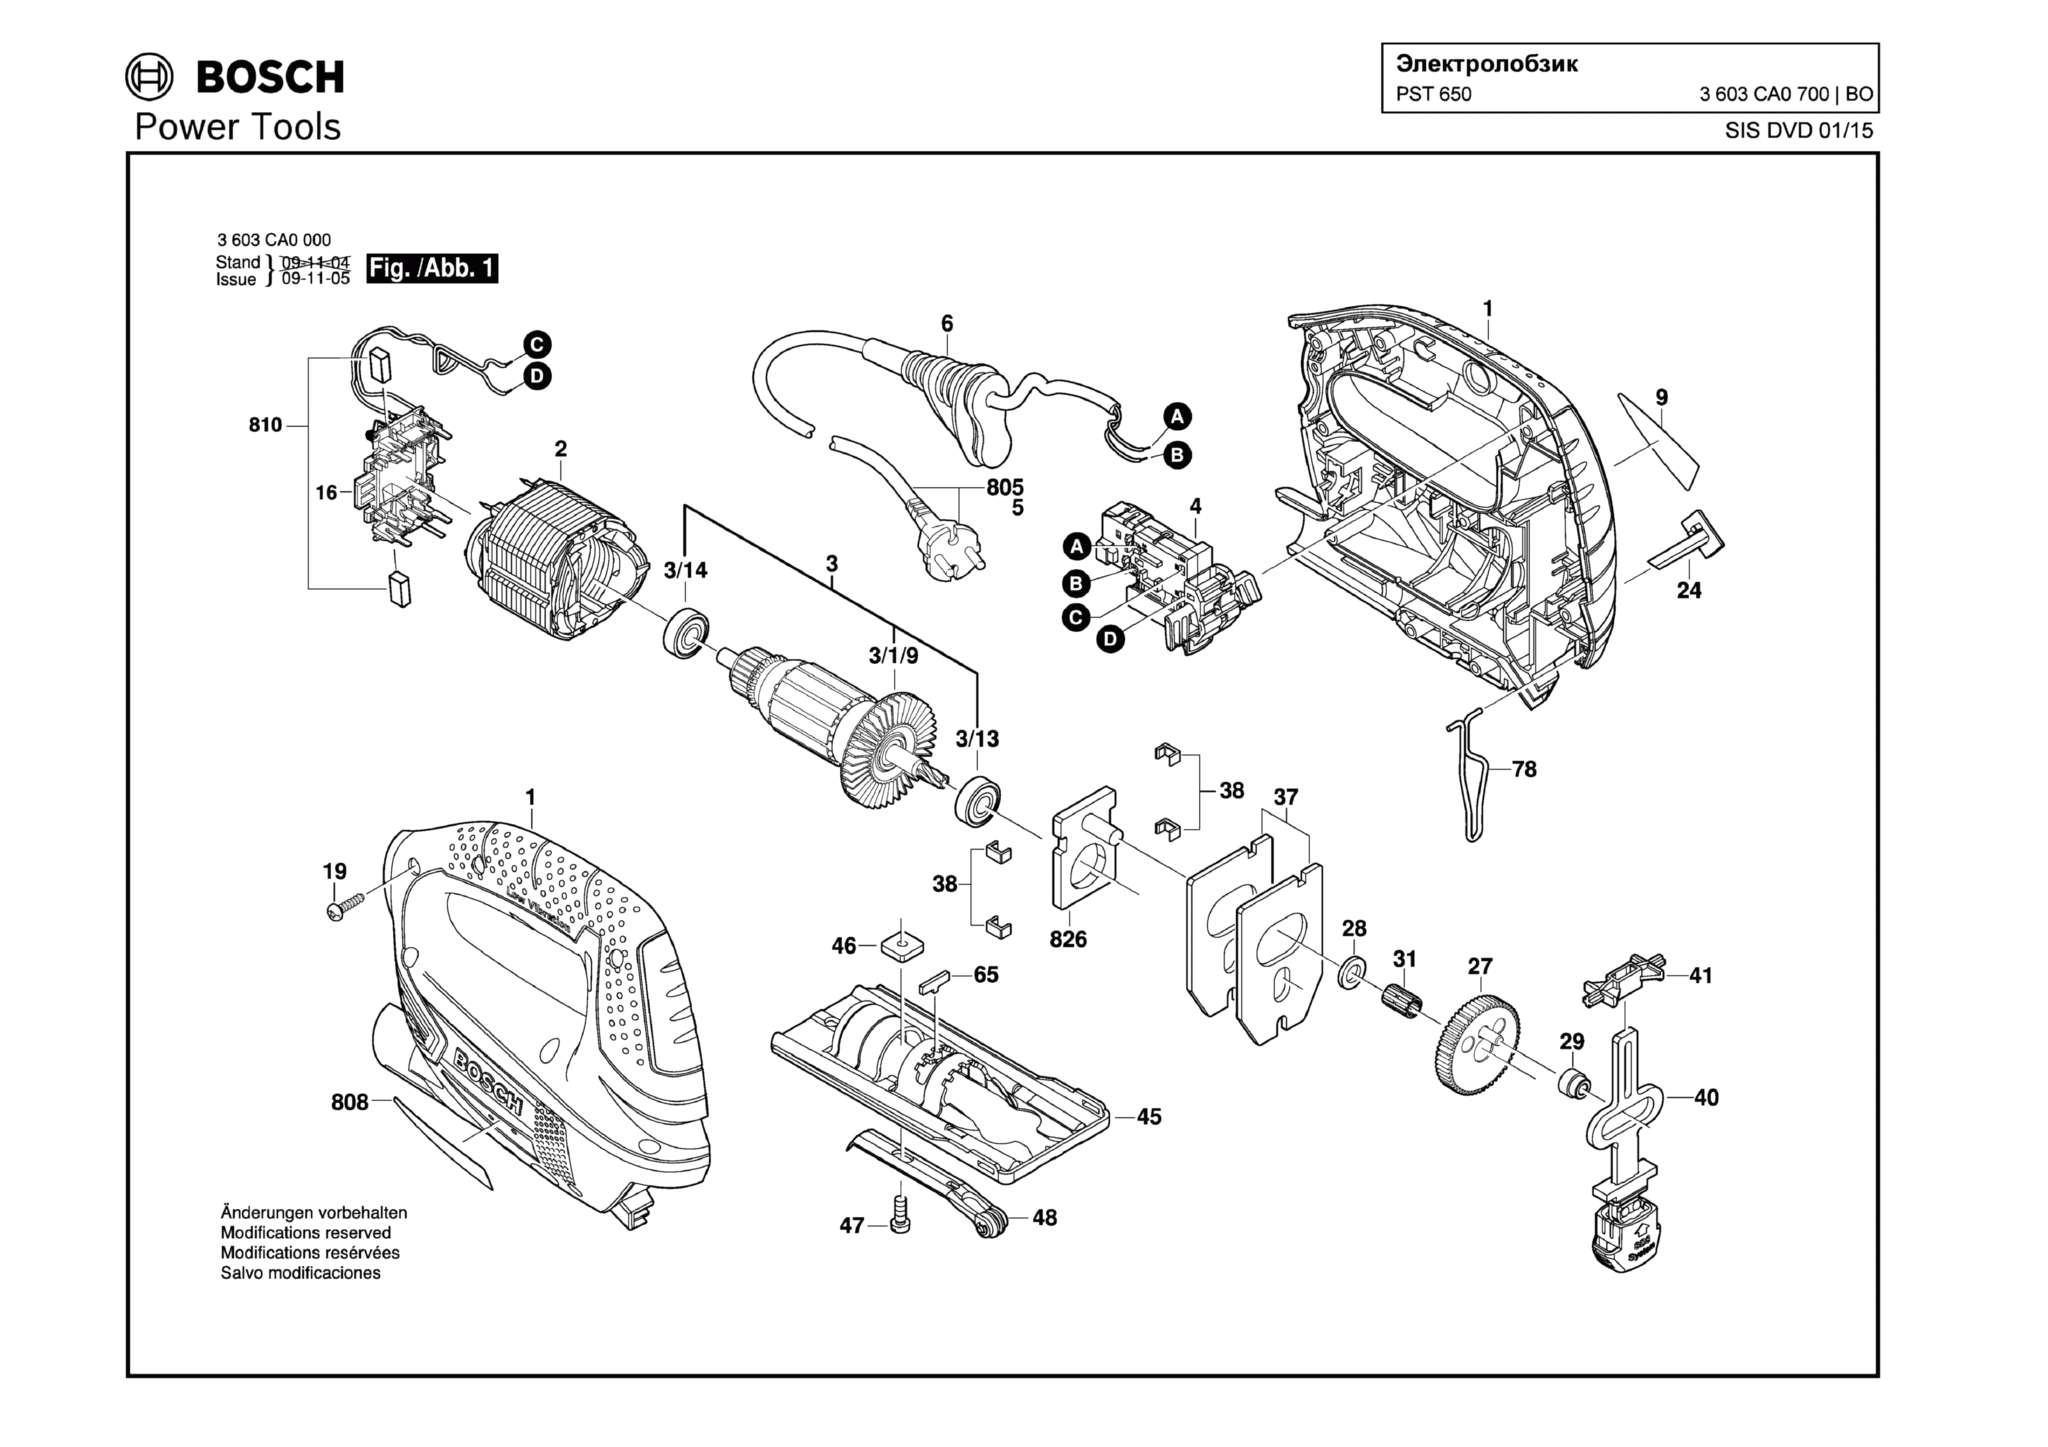 Запчасти, схема и деталировка Bosch PST 650 (ТИП 3603CA0700)